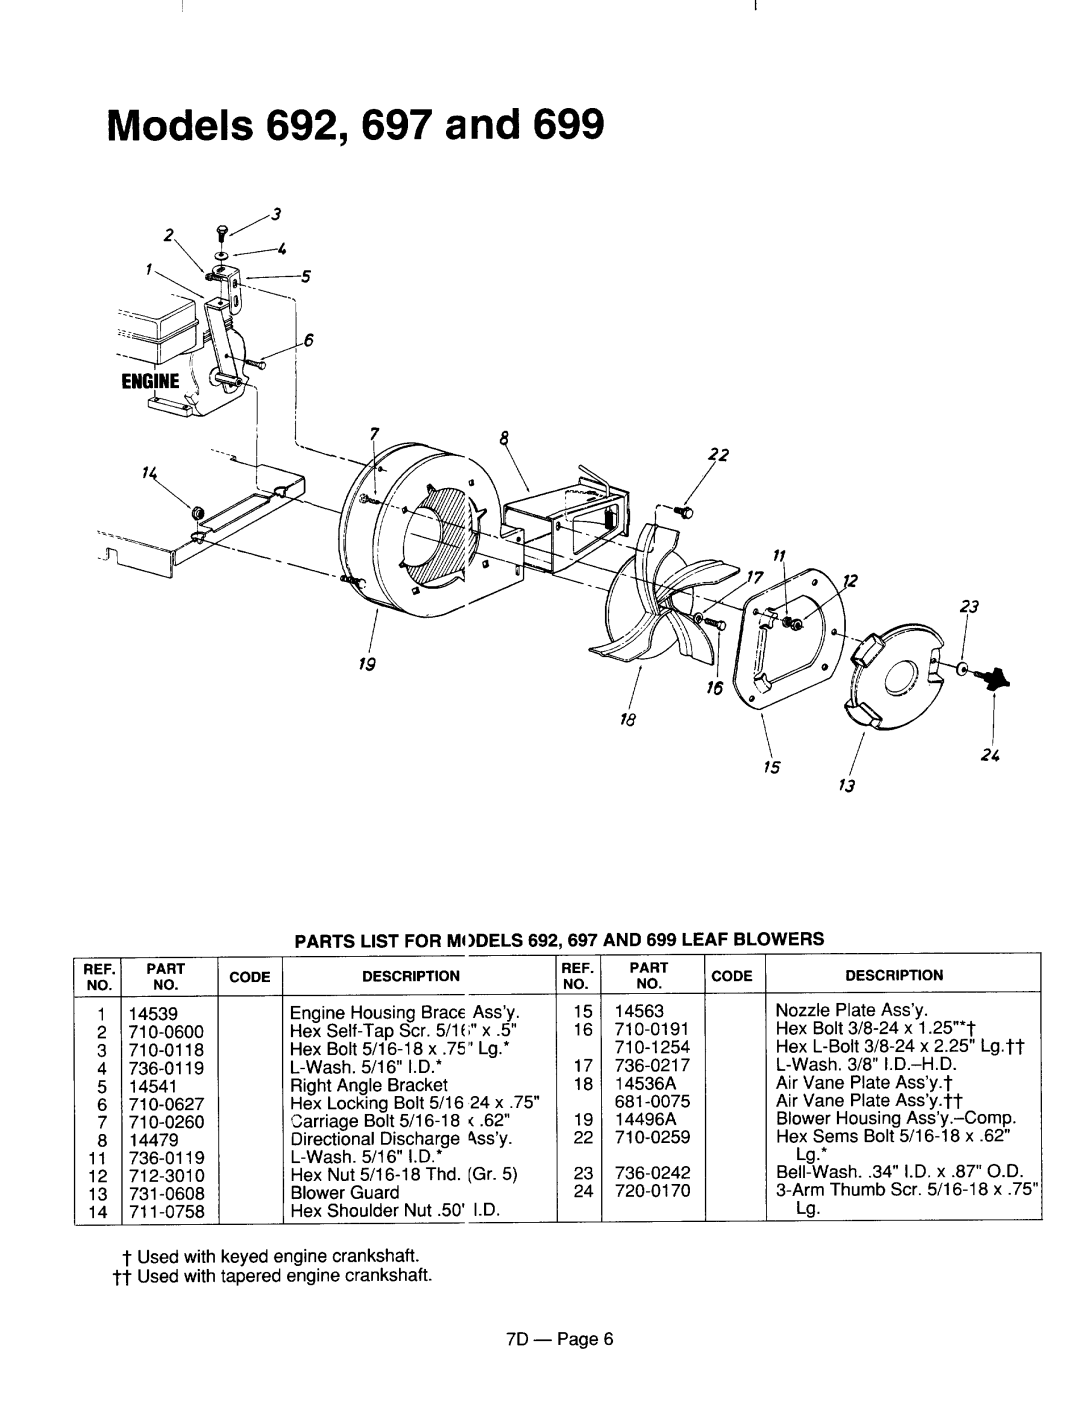 MTD 770-96-7D manual 